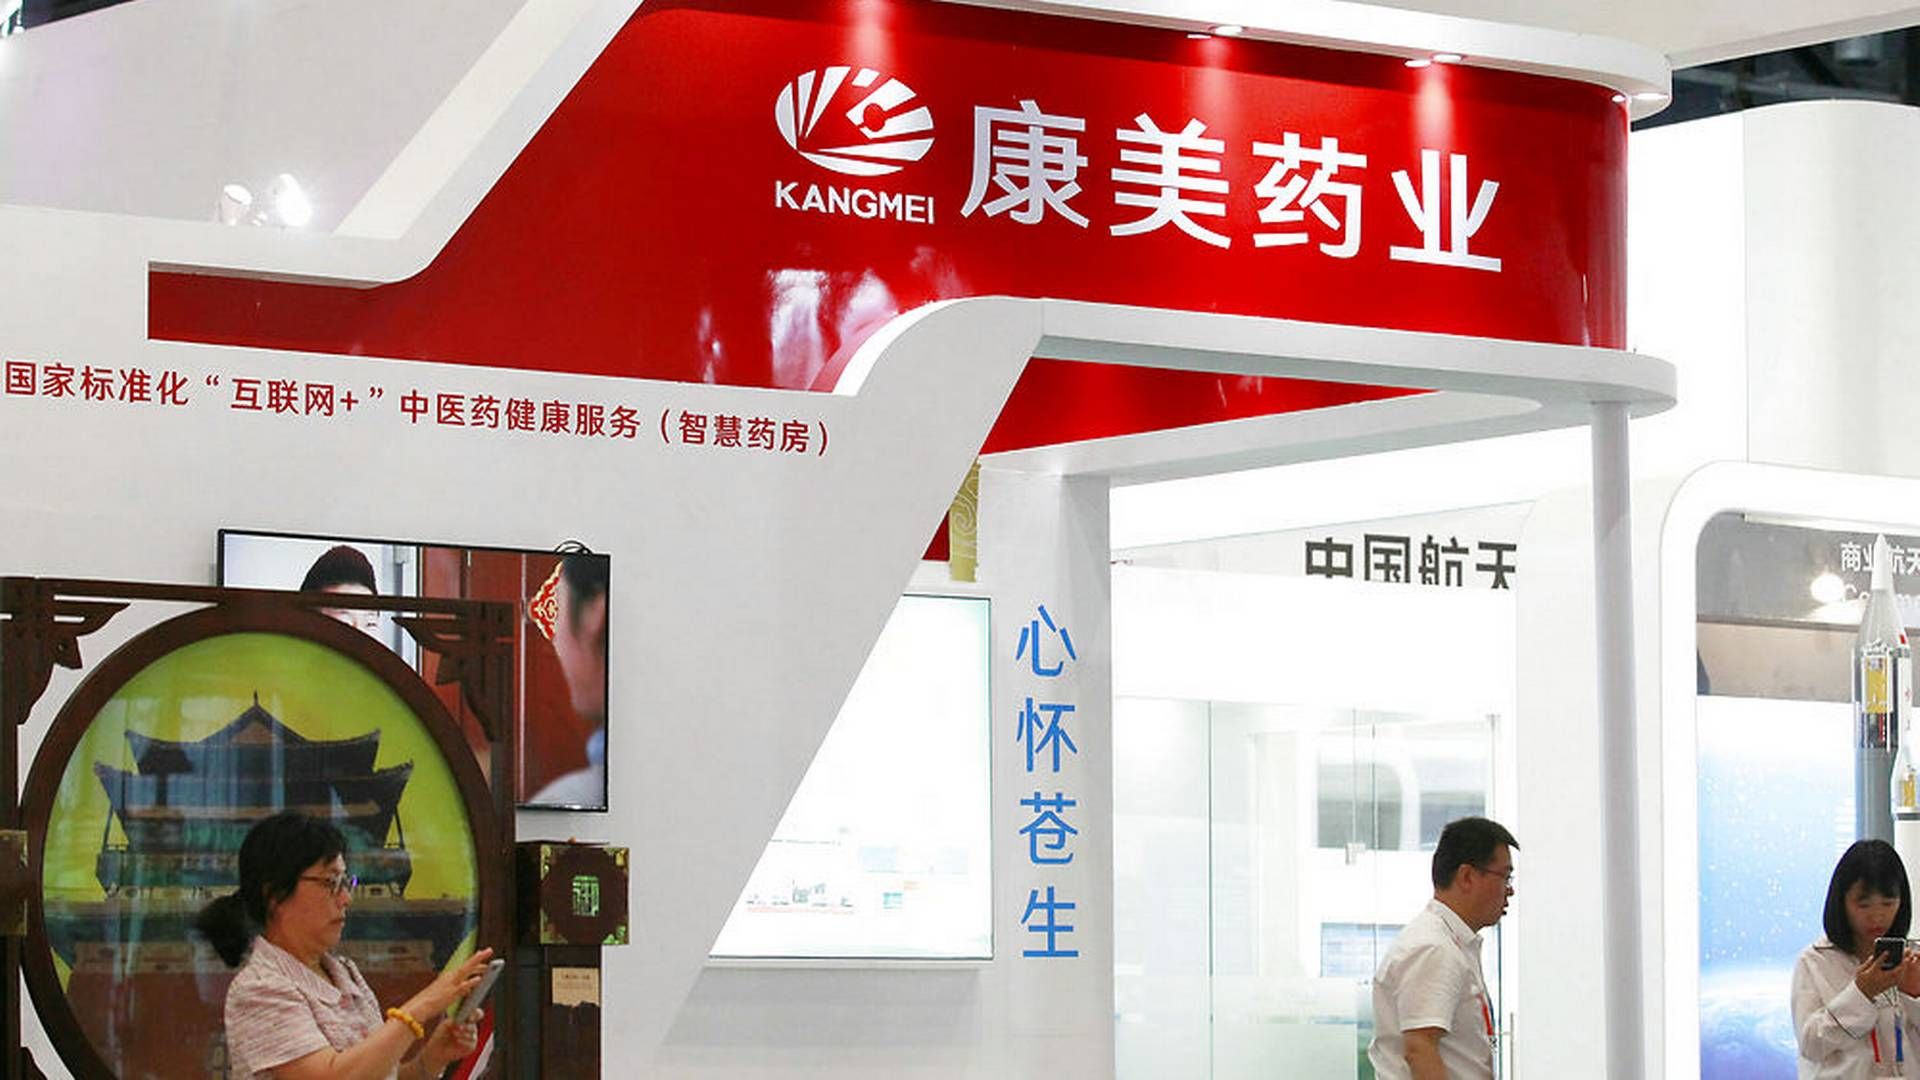 Regnskabssvindel hos Kangmei Pharmaceutical, hvis logo her ses på en konference i Beijing, fører nu til en myndighedsaktion rettet mod medicinalfirmaer. | Foto: Ritzau Scanpix/Reuters/China Stringer Network